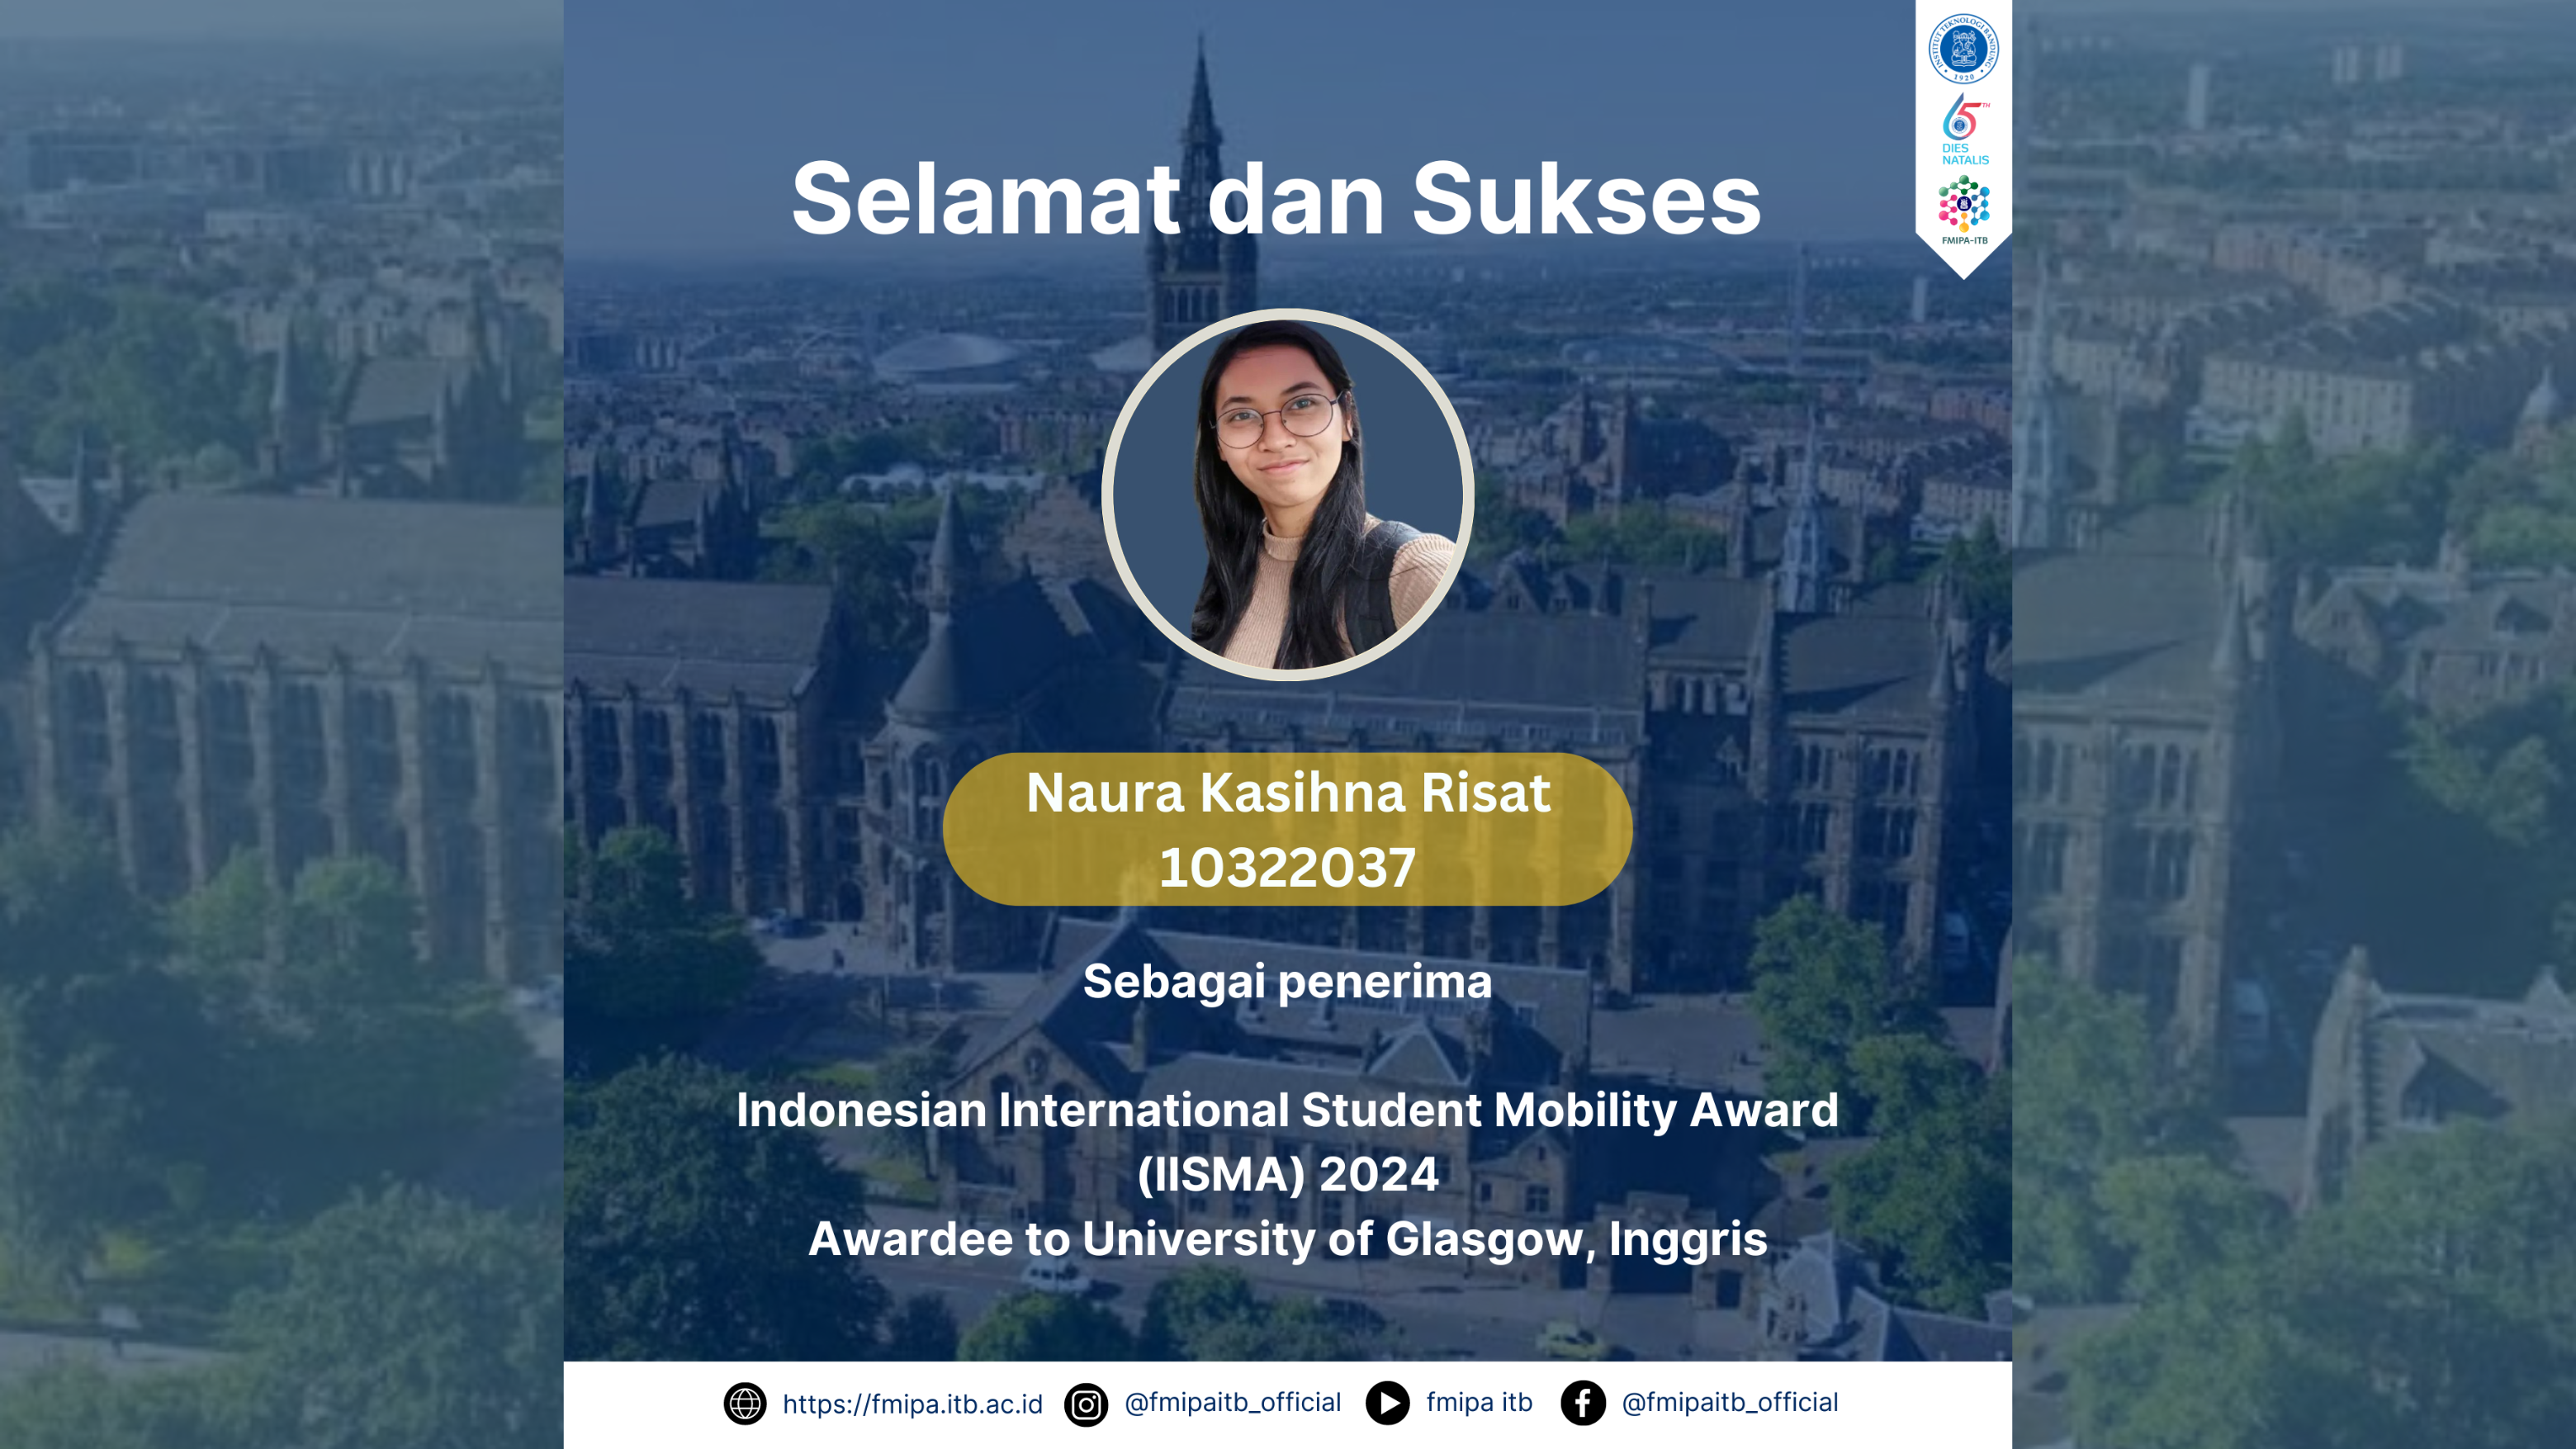 Selamat dan sukses kepada Naura Kasihna Risat (10322037) sebagai Awardee IISMA 2024 ke University of Glasgow, Inggris